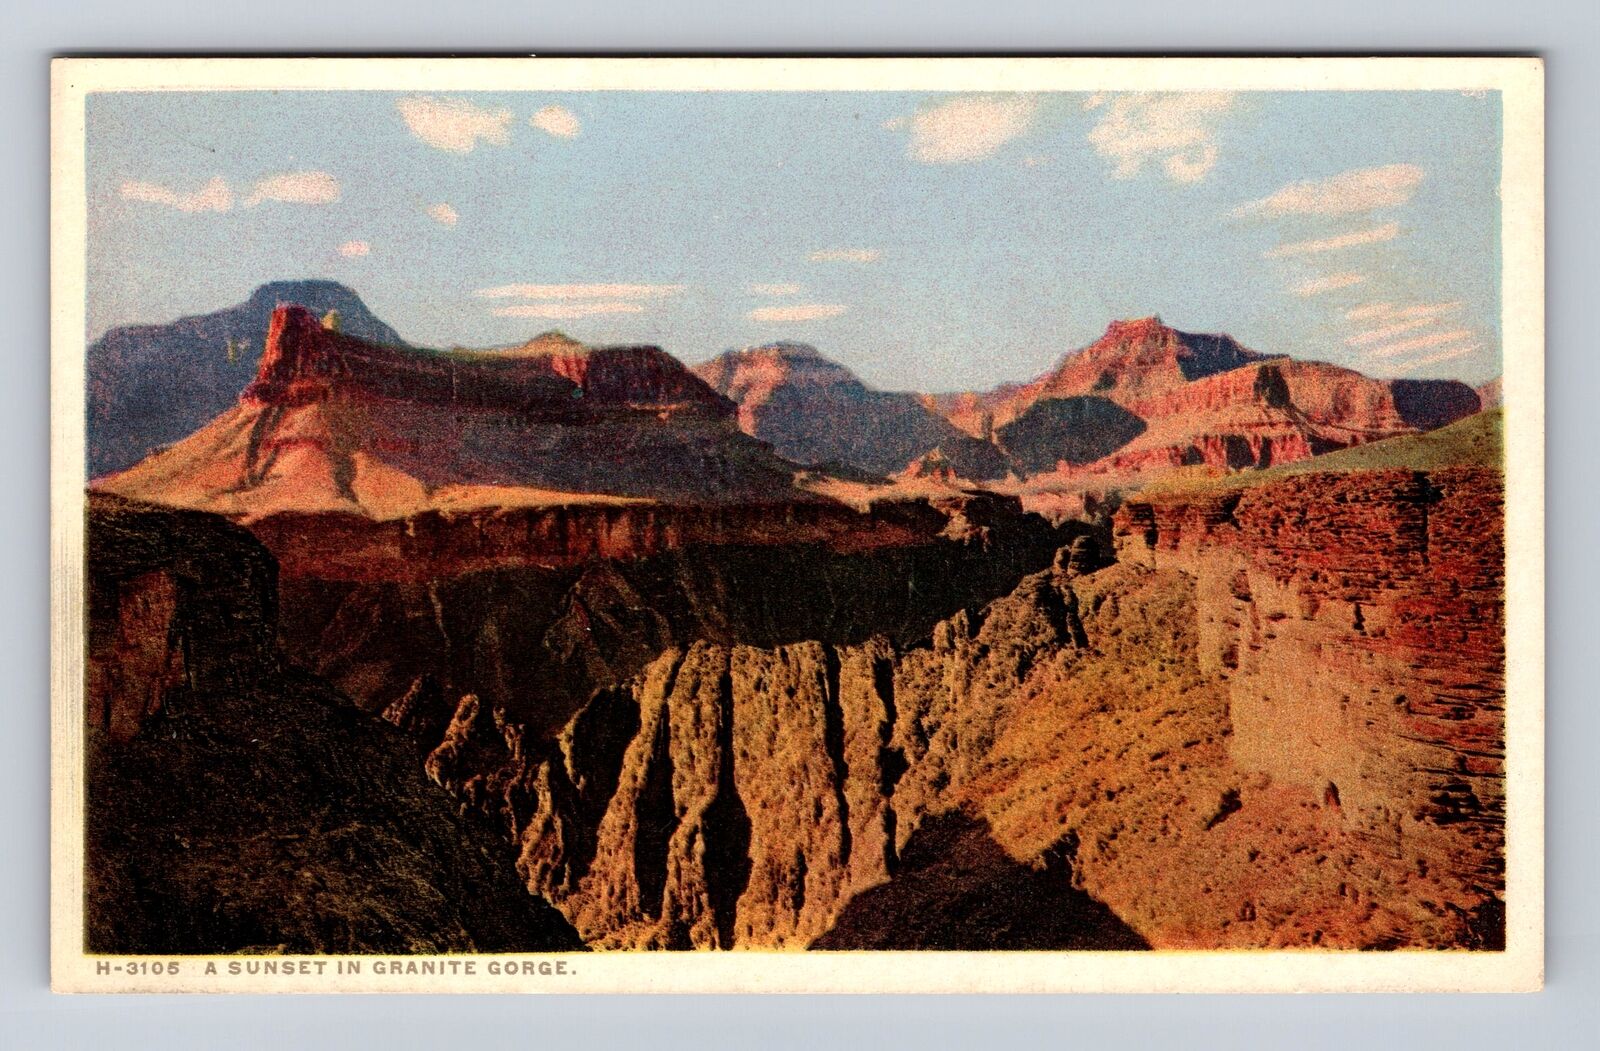 Granite Gorge National Park, Sunset, Series #3105, Antique, Vintage Postcard